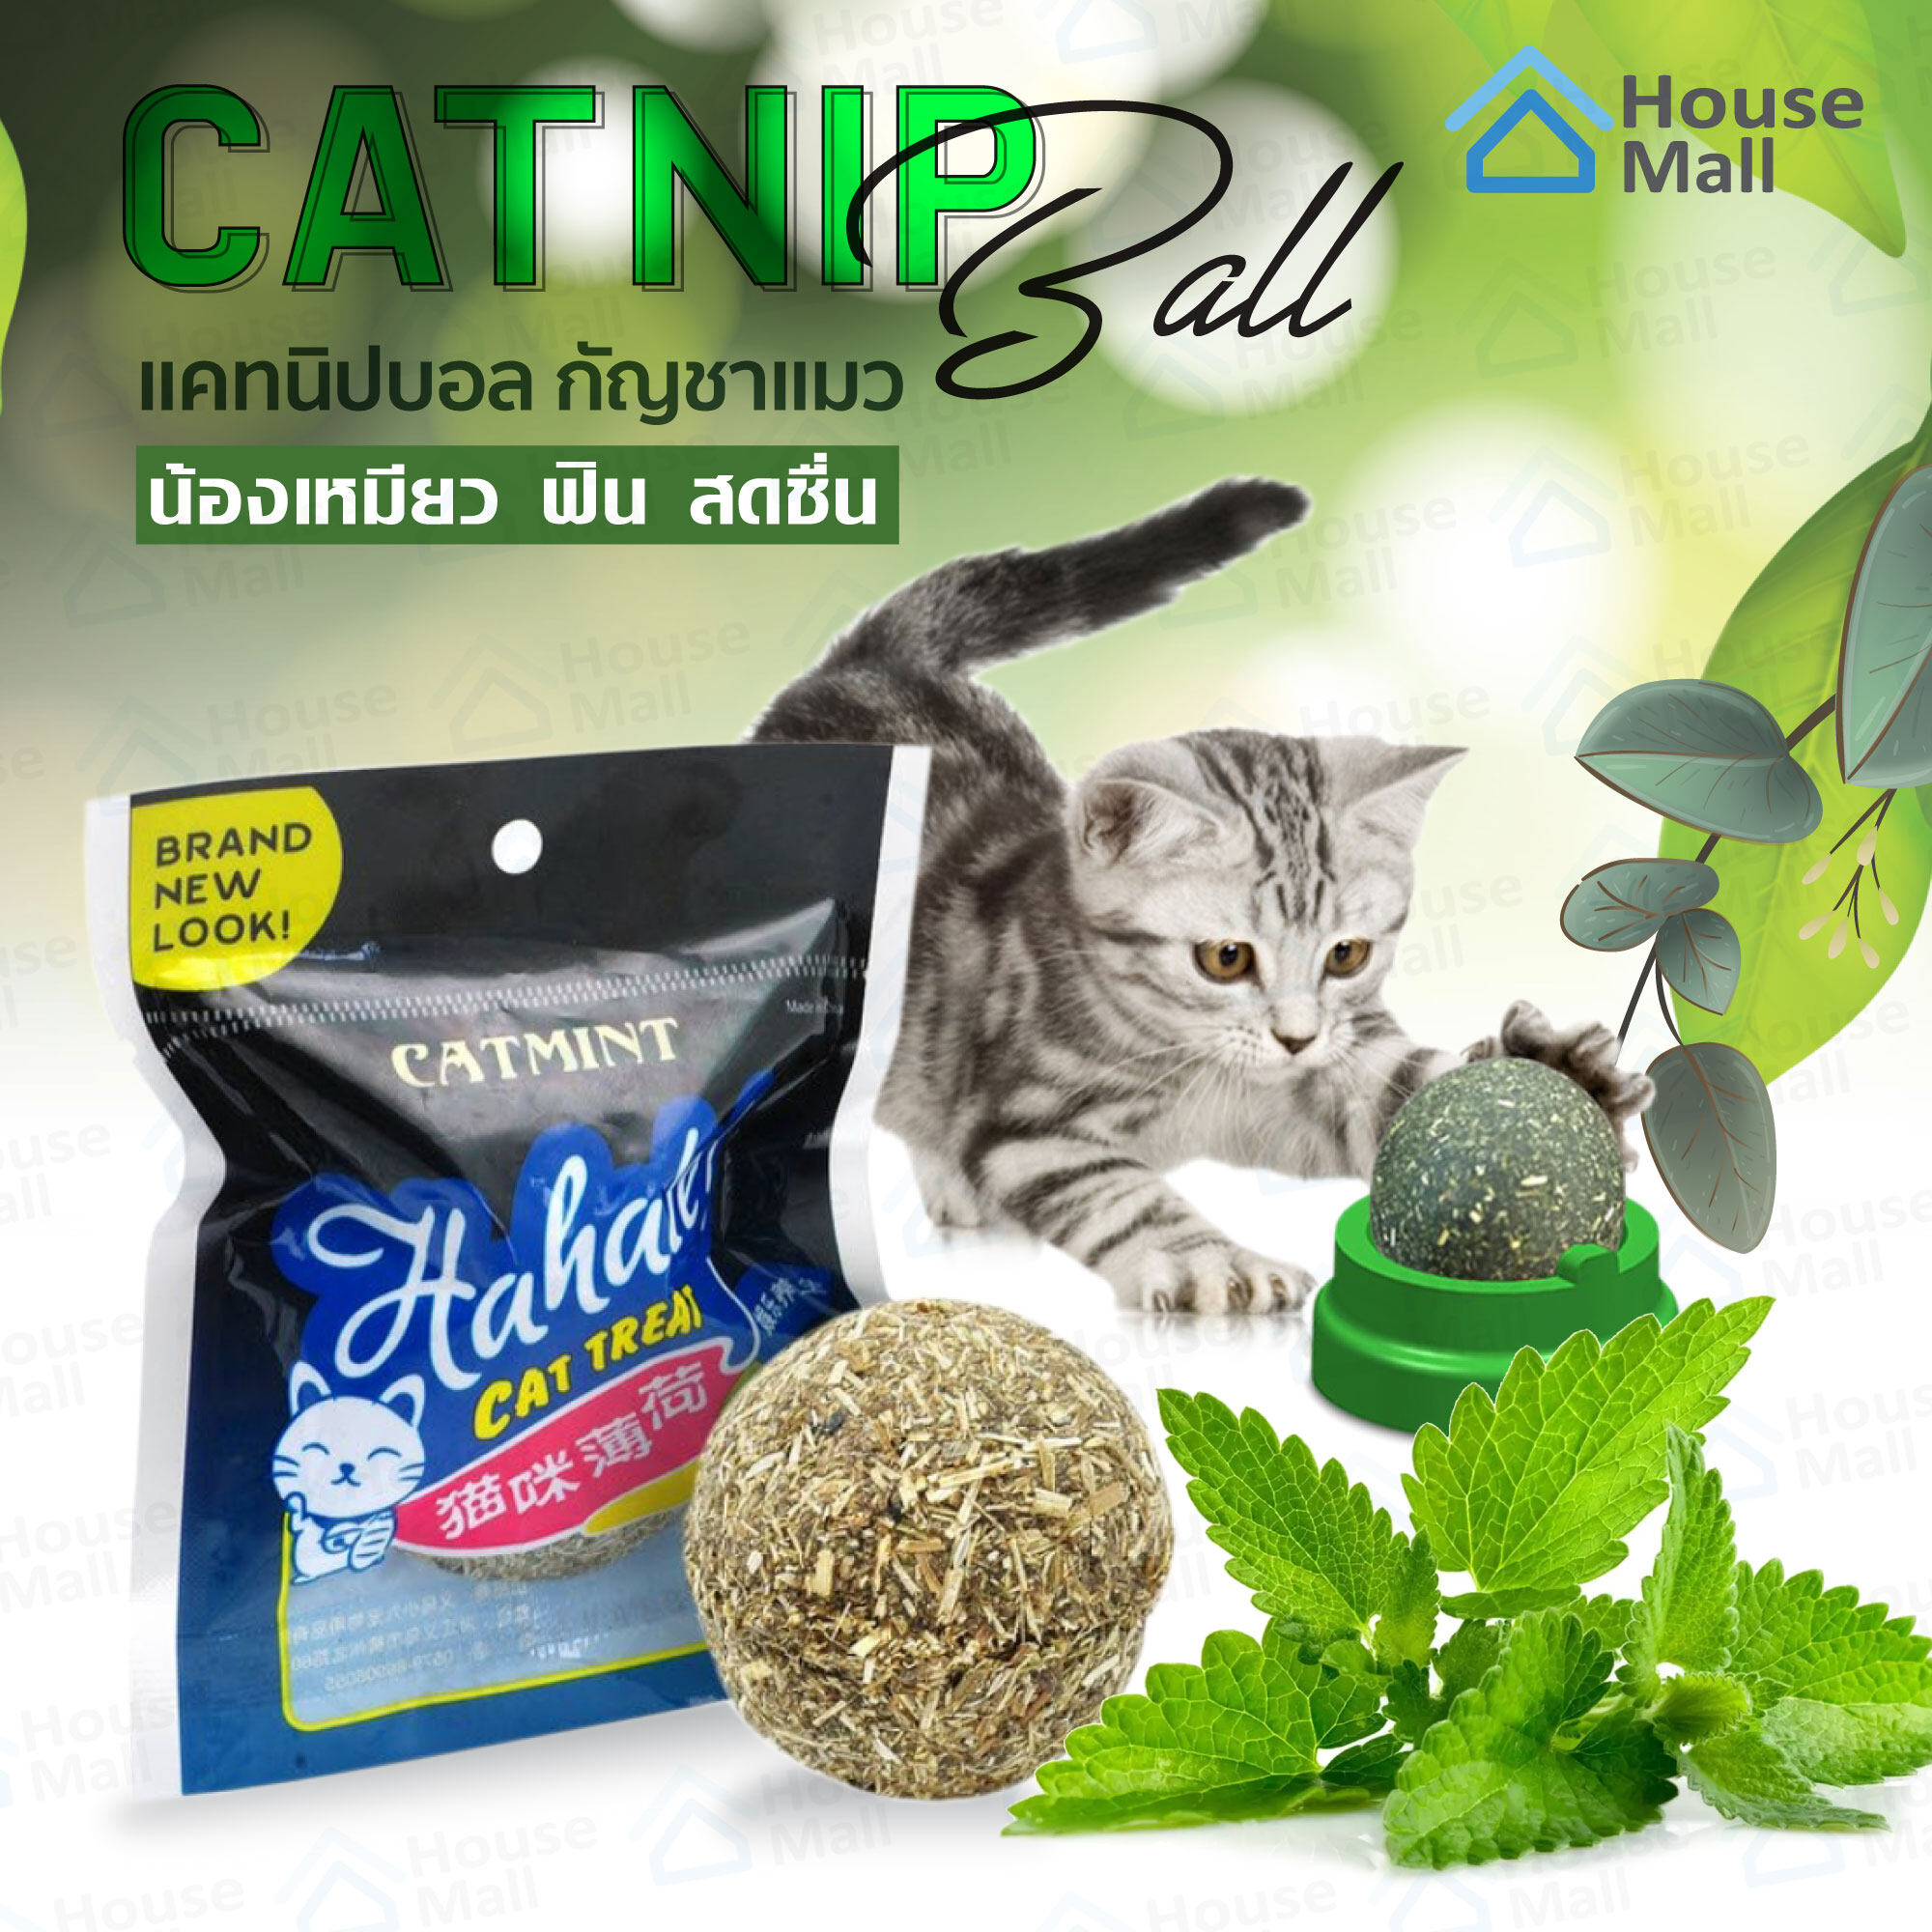 กัญชาบอล แคทนิปบอล Catnip Ball กัญชาแมว ขนมแมว ปลอดภัย 100%